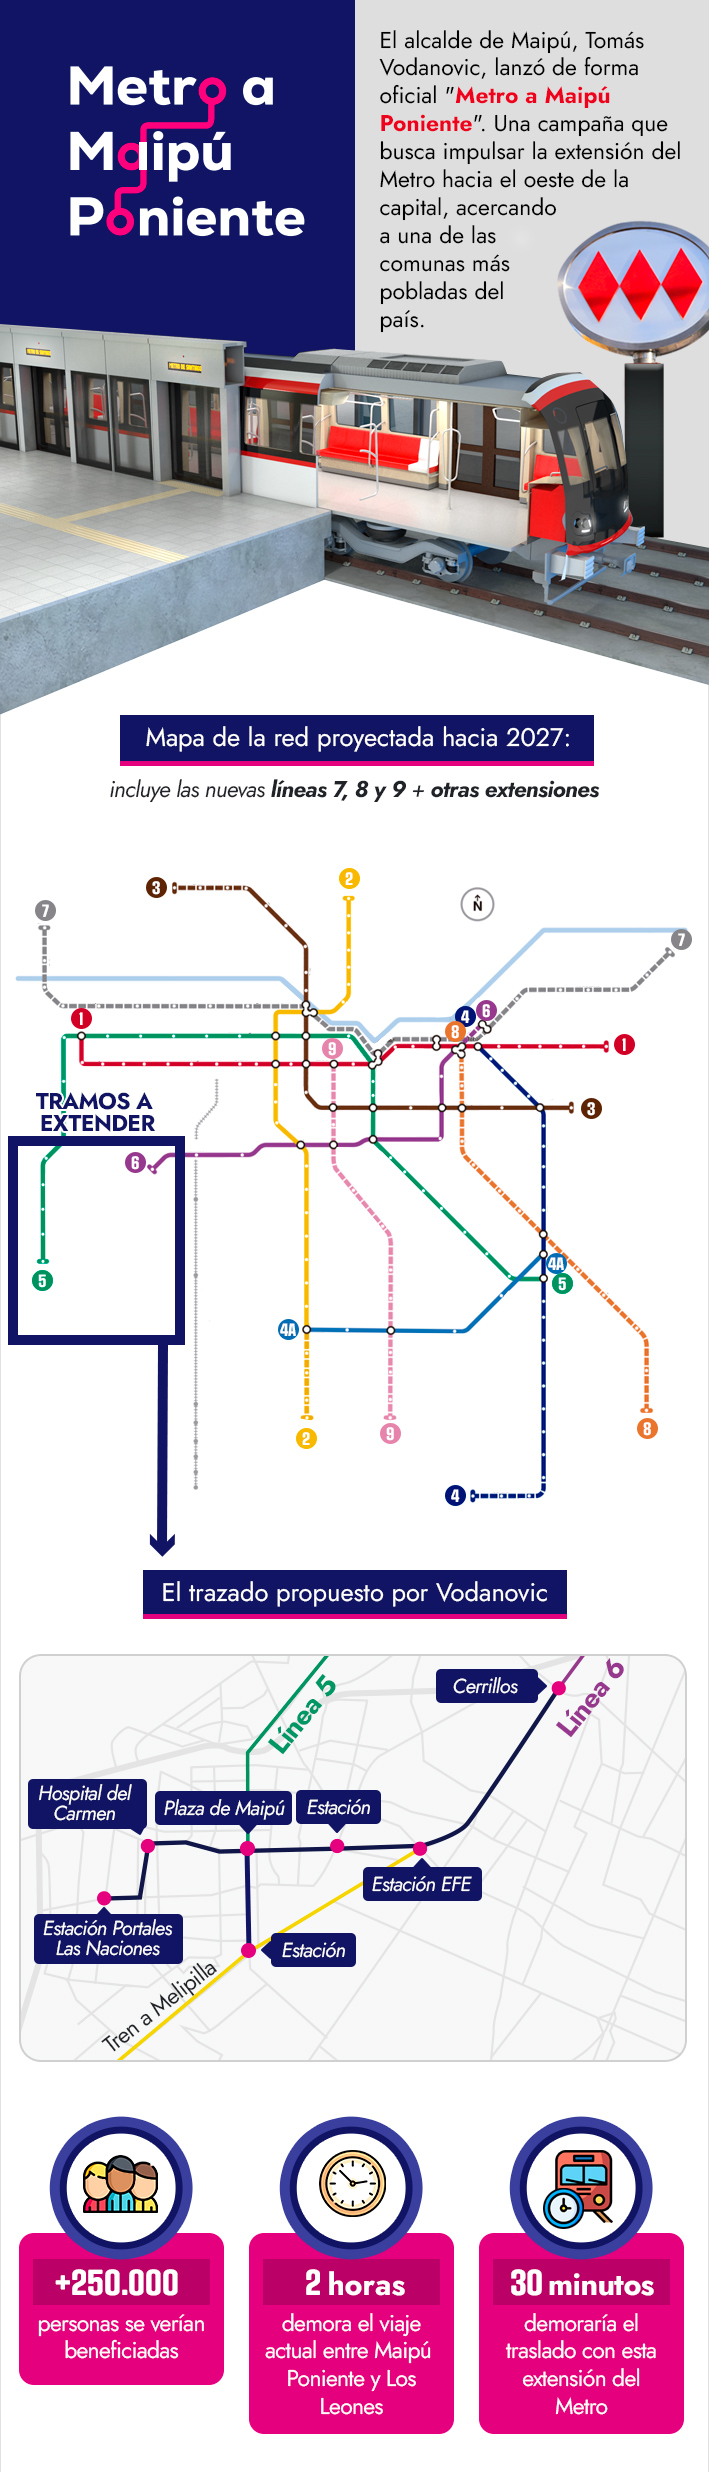 Metro hacia Maipú Poniente: Así es la extensión que 